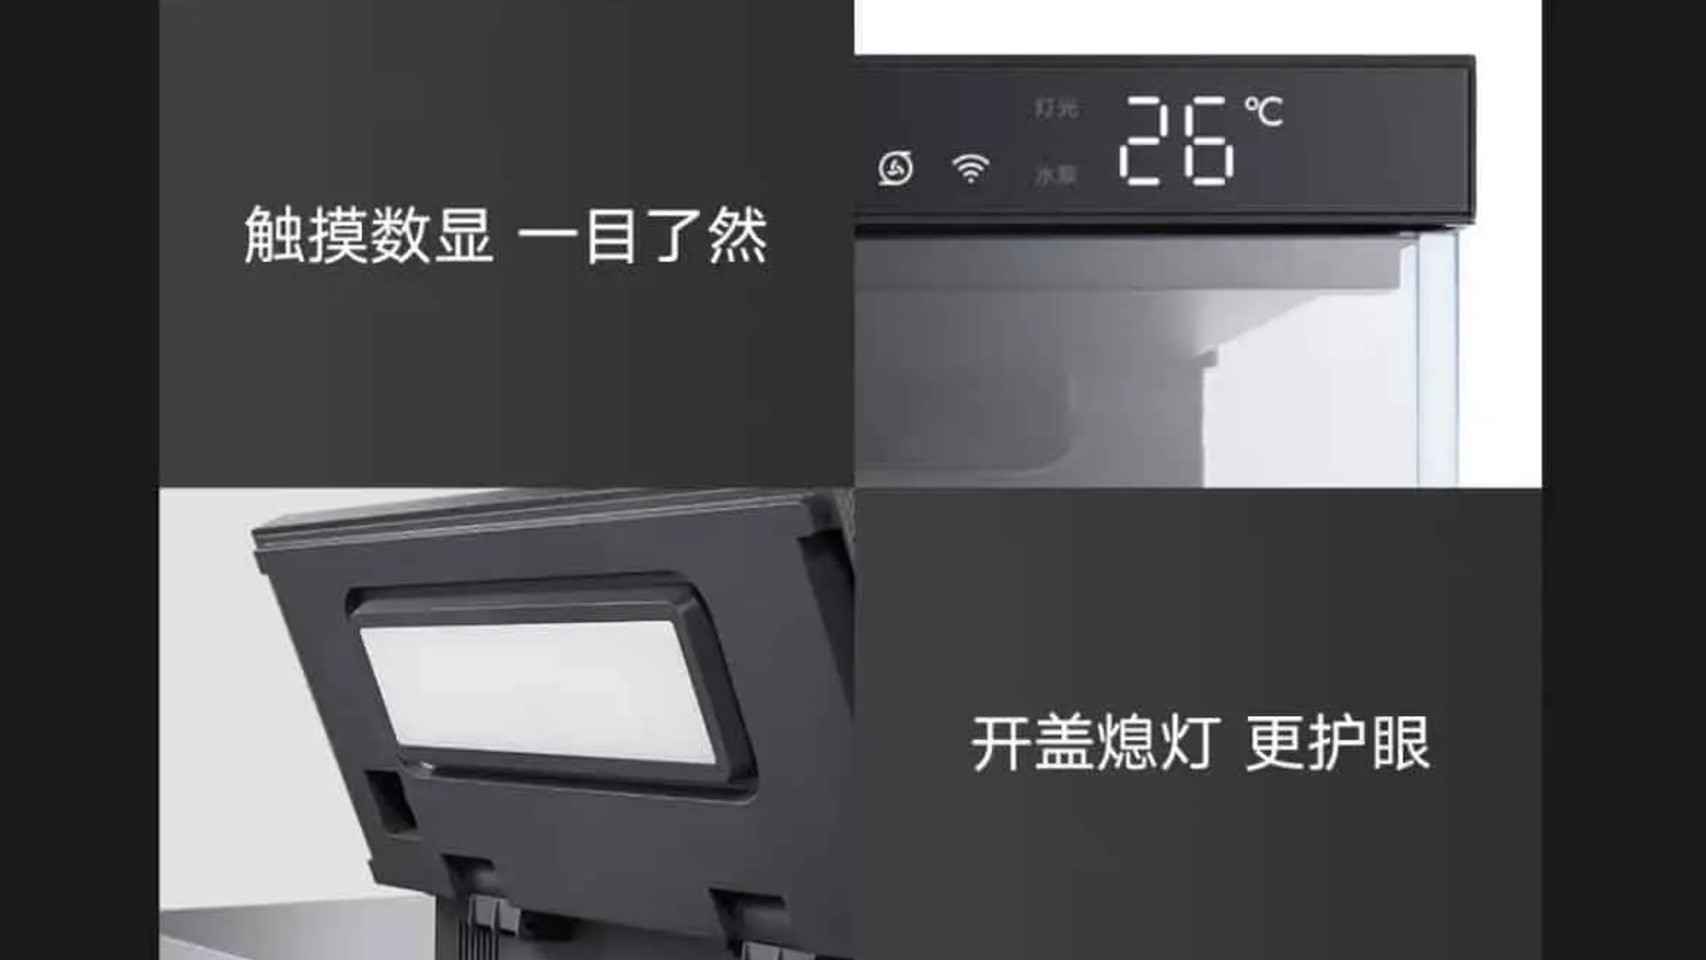 El acuario de Xiaomi tiene iluminación integrada y termostato